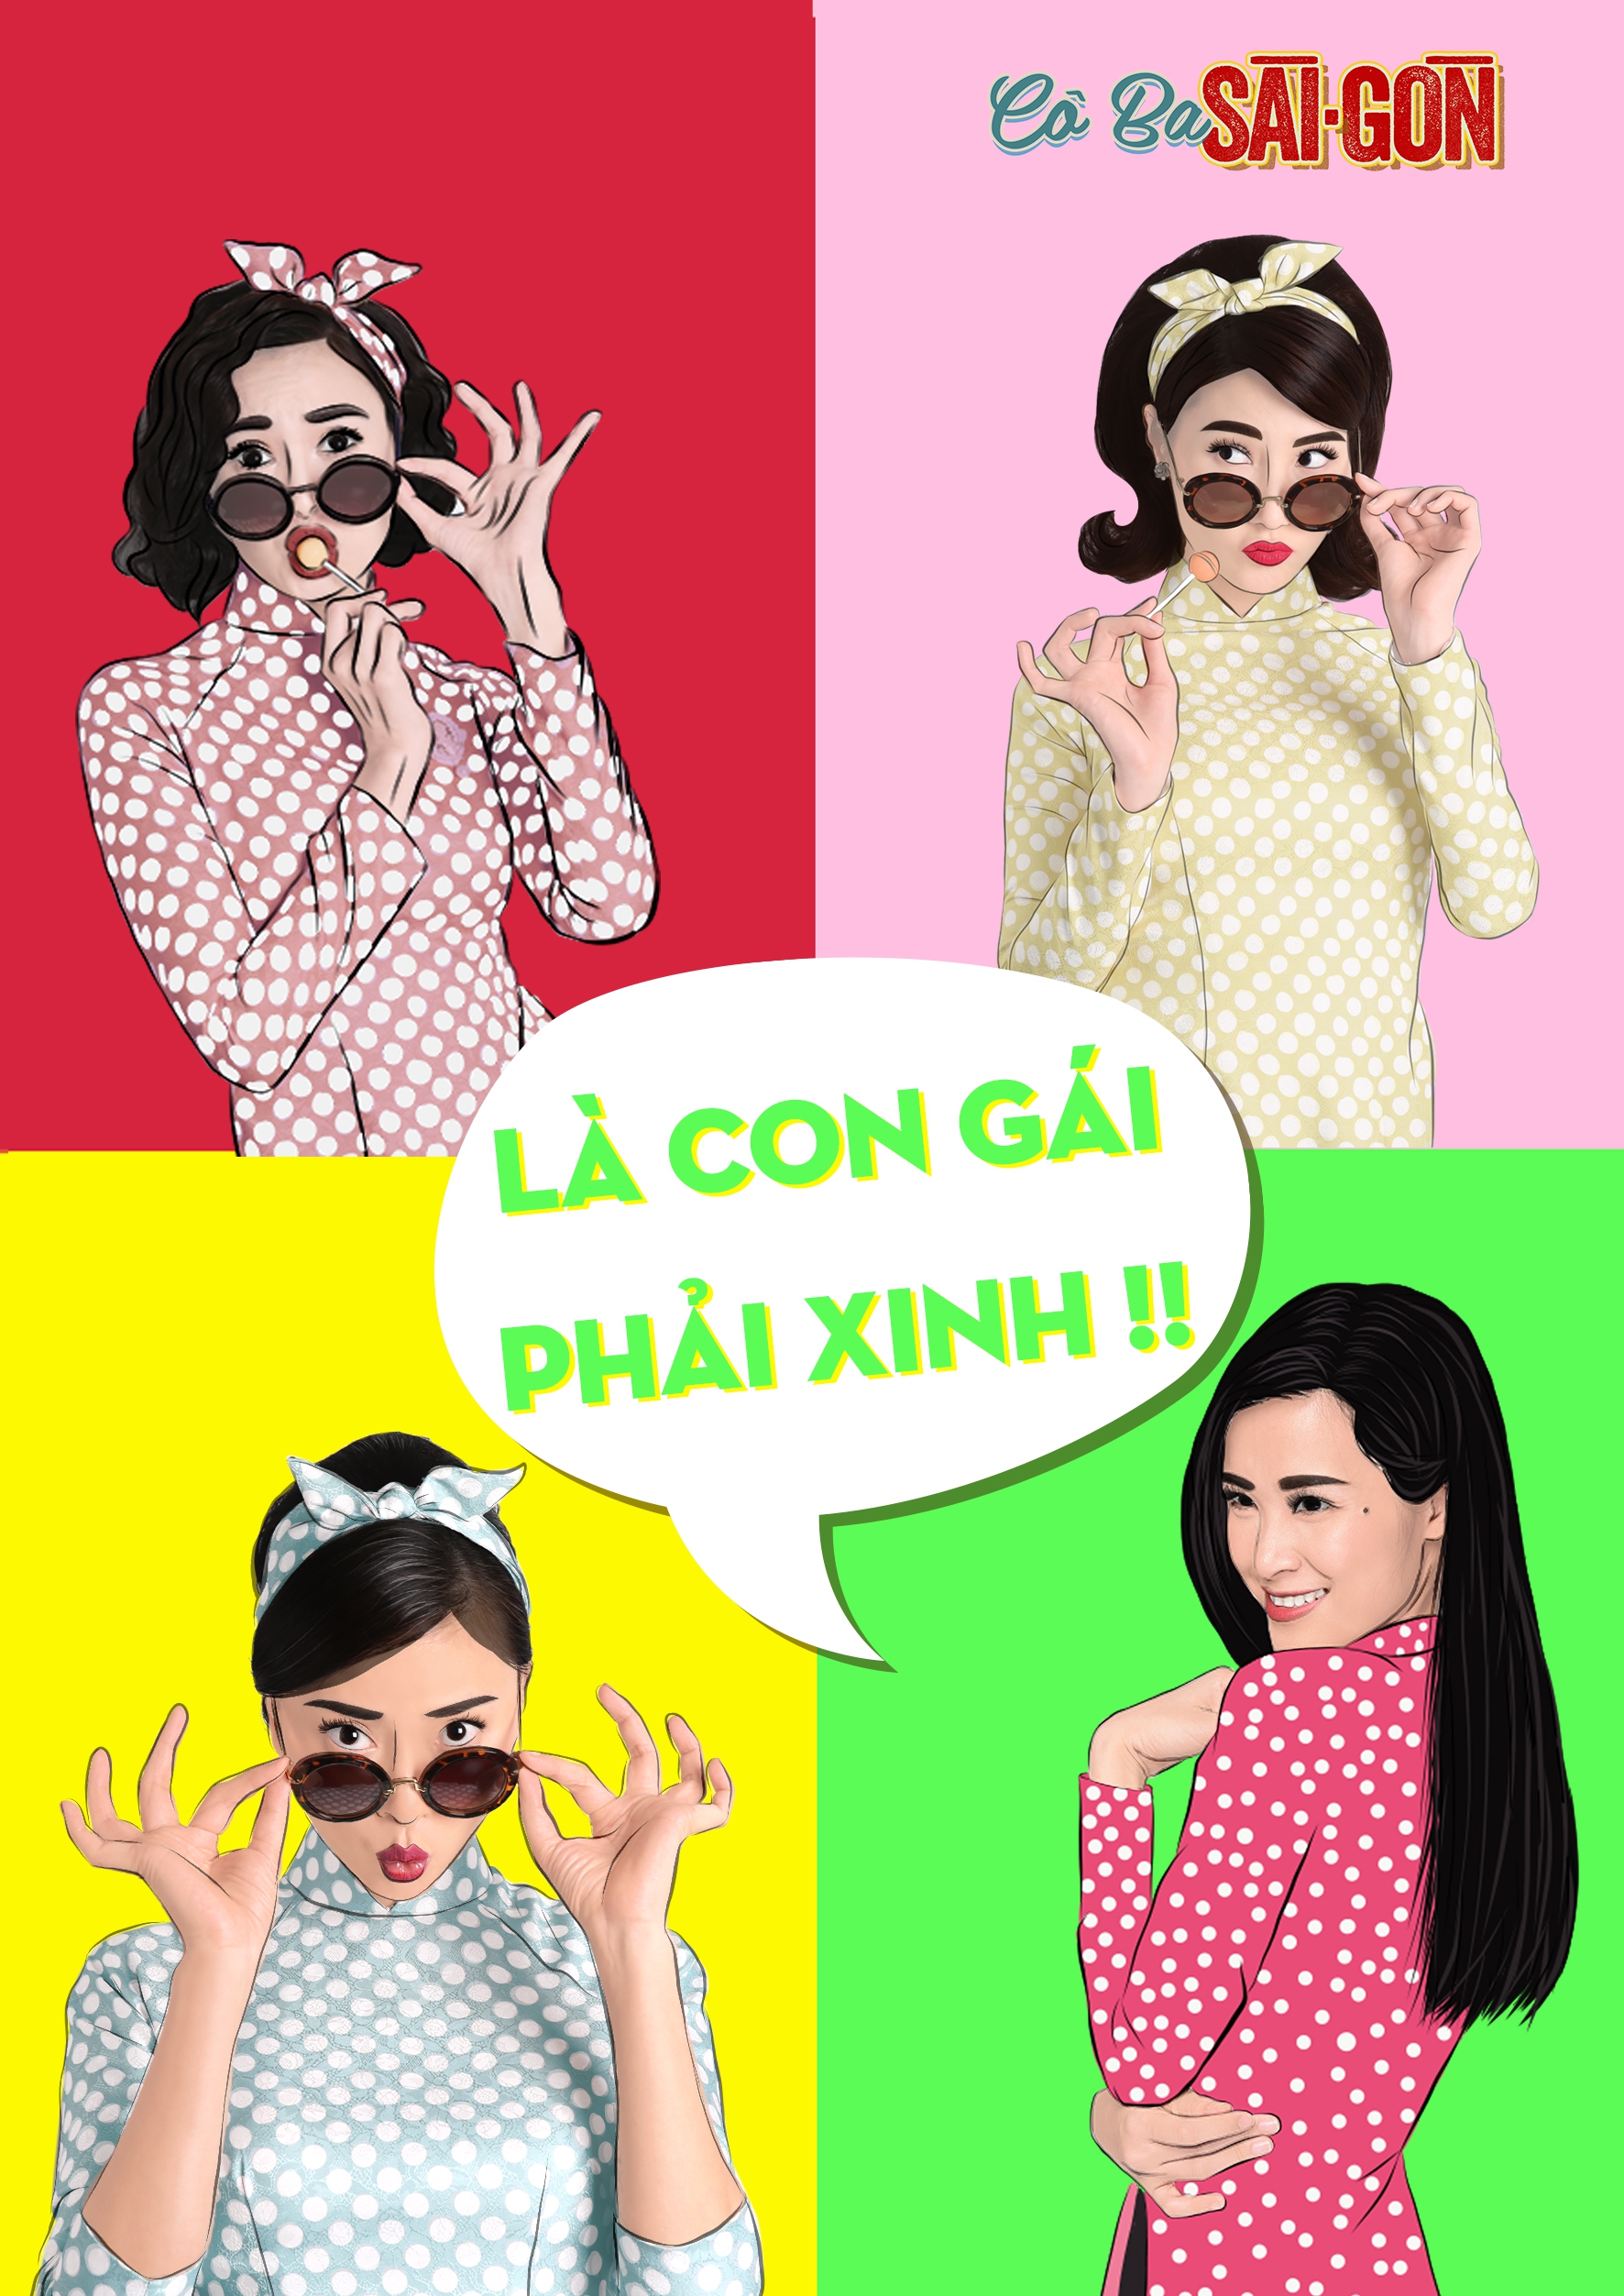 Hết tuyên truyền nữ quyền, các mỹ nhân Cô Ba Sài Gòn lại nhí nhảnh với phong cách pop-art - Ảnh 1.